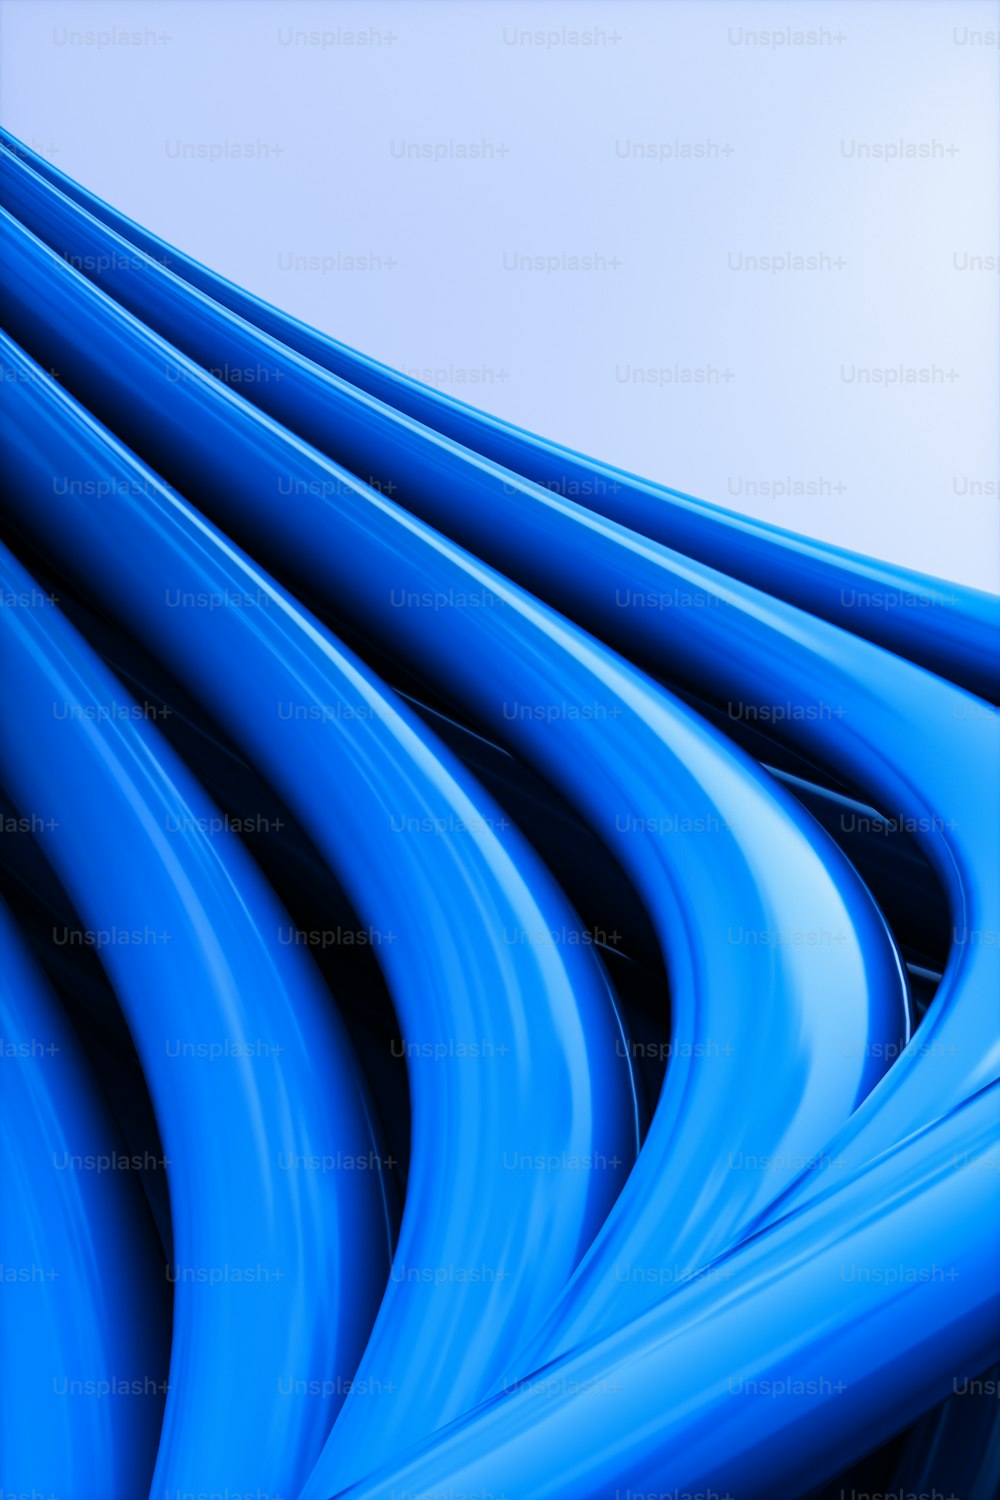 Una imagen de un fondo azul con líneas onduladas